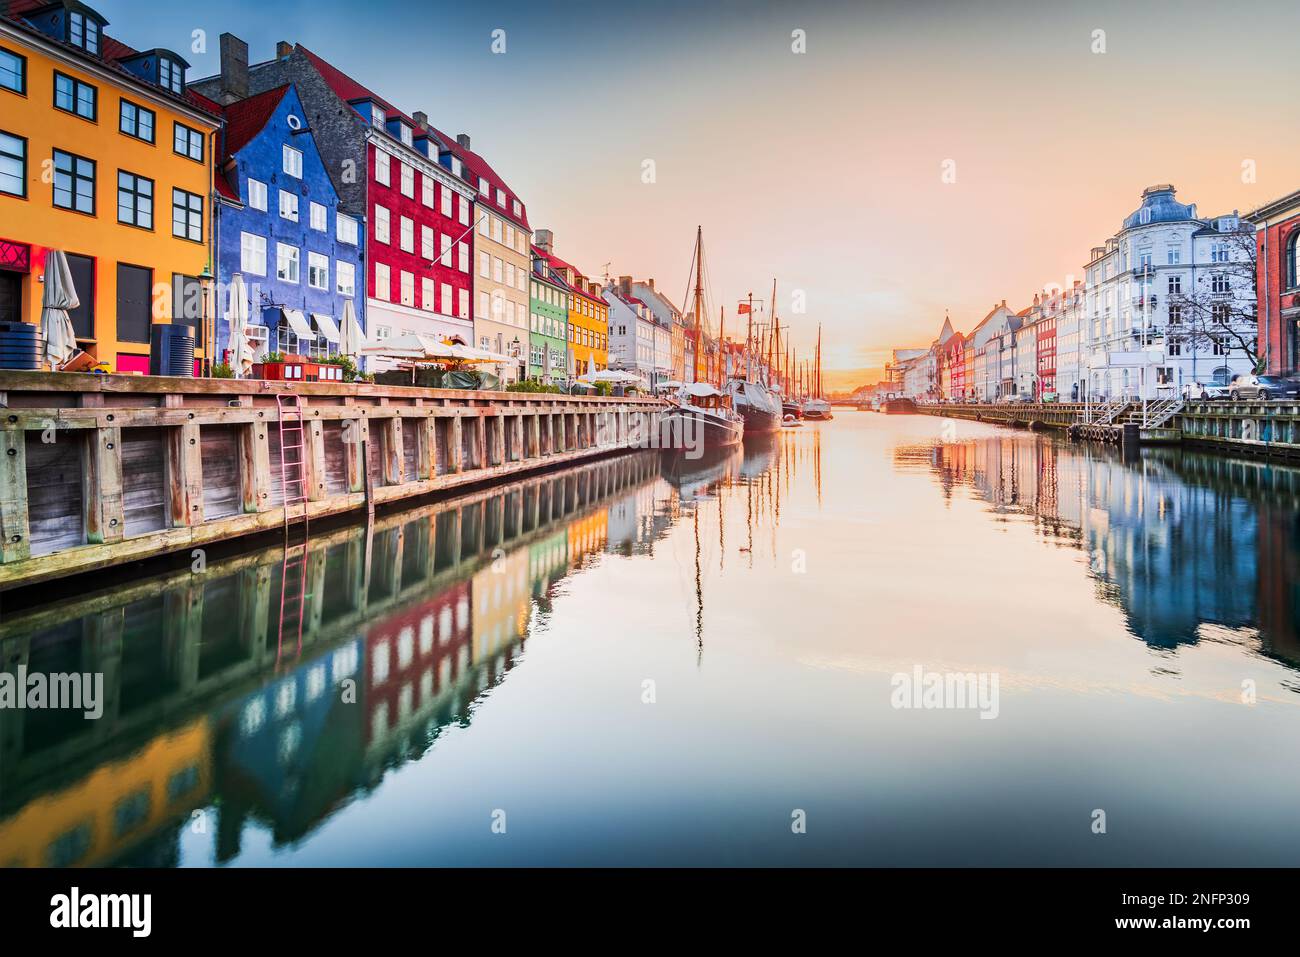 Le charme de Copenhague, Danemark à Nyhavn. Canal emblématique, lever de soleil coloré et reflets d'eau à couper le souffle. Banque D'Images